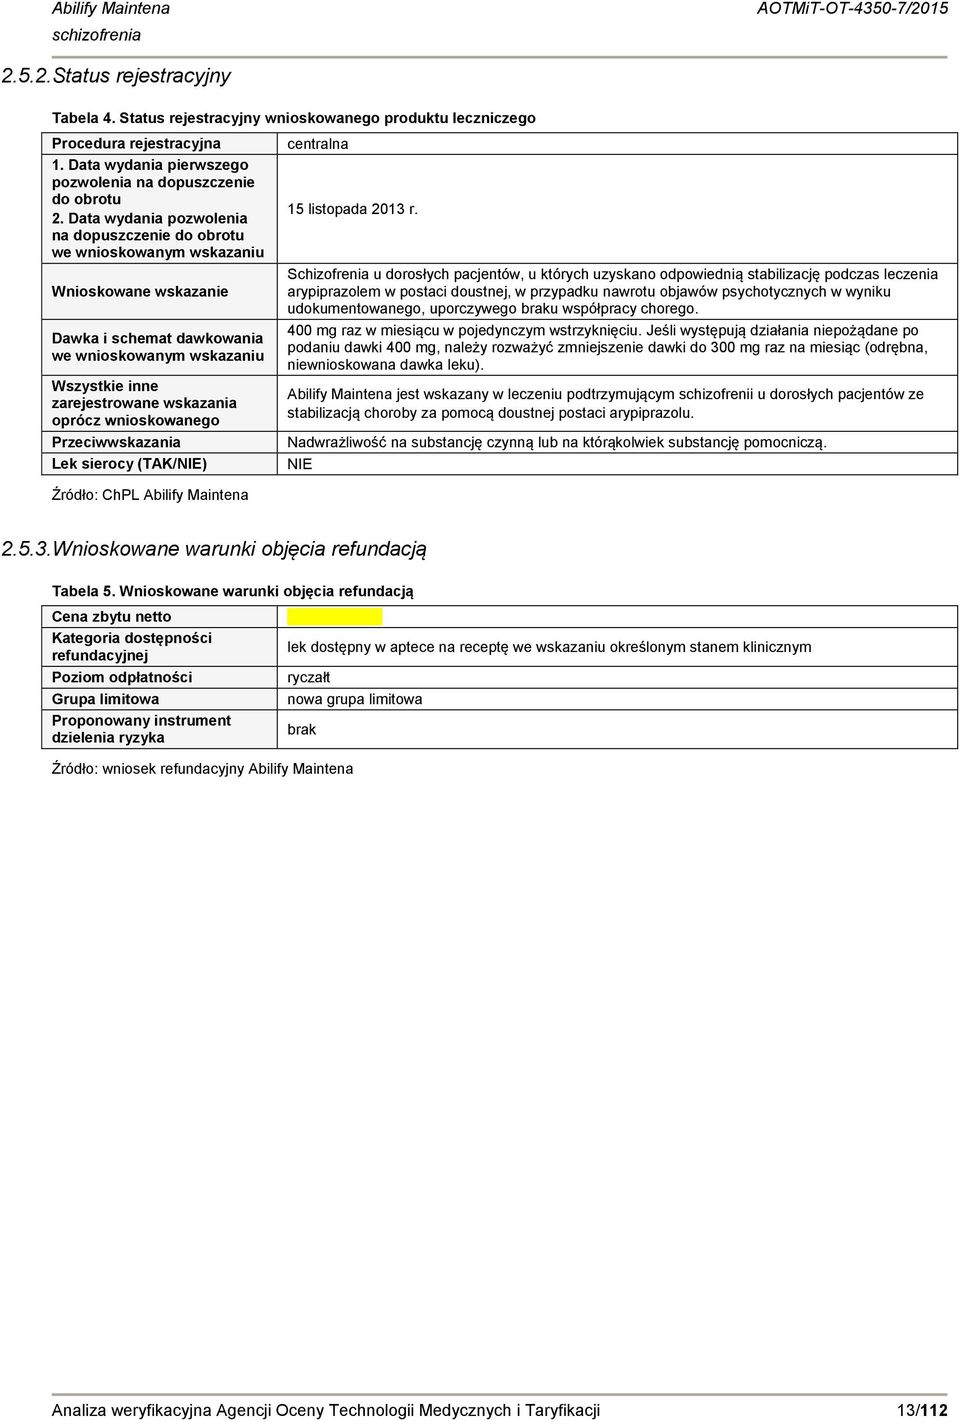 wnioskowanego rzeciwwskazania Lek sierocy (TAK/NIE) centralna 15 listopada 2013 r.